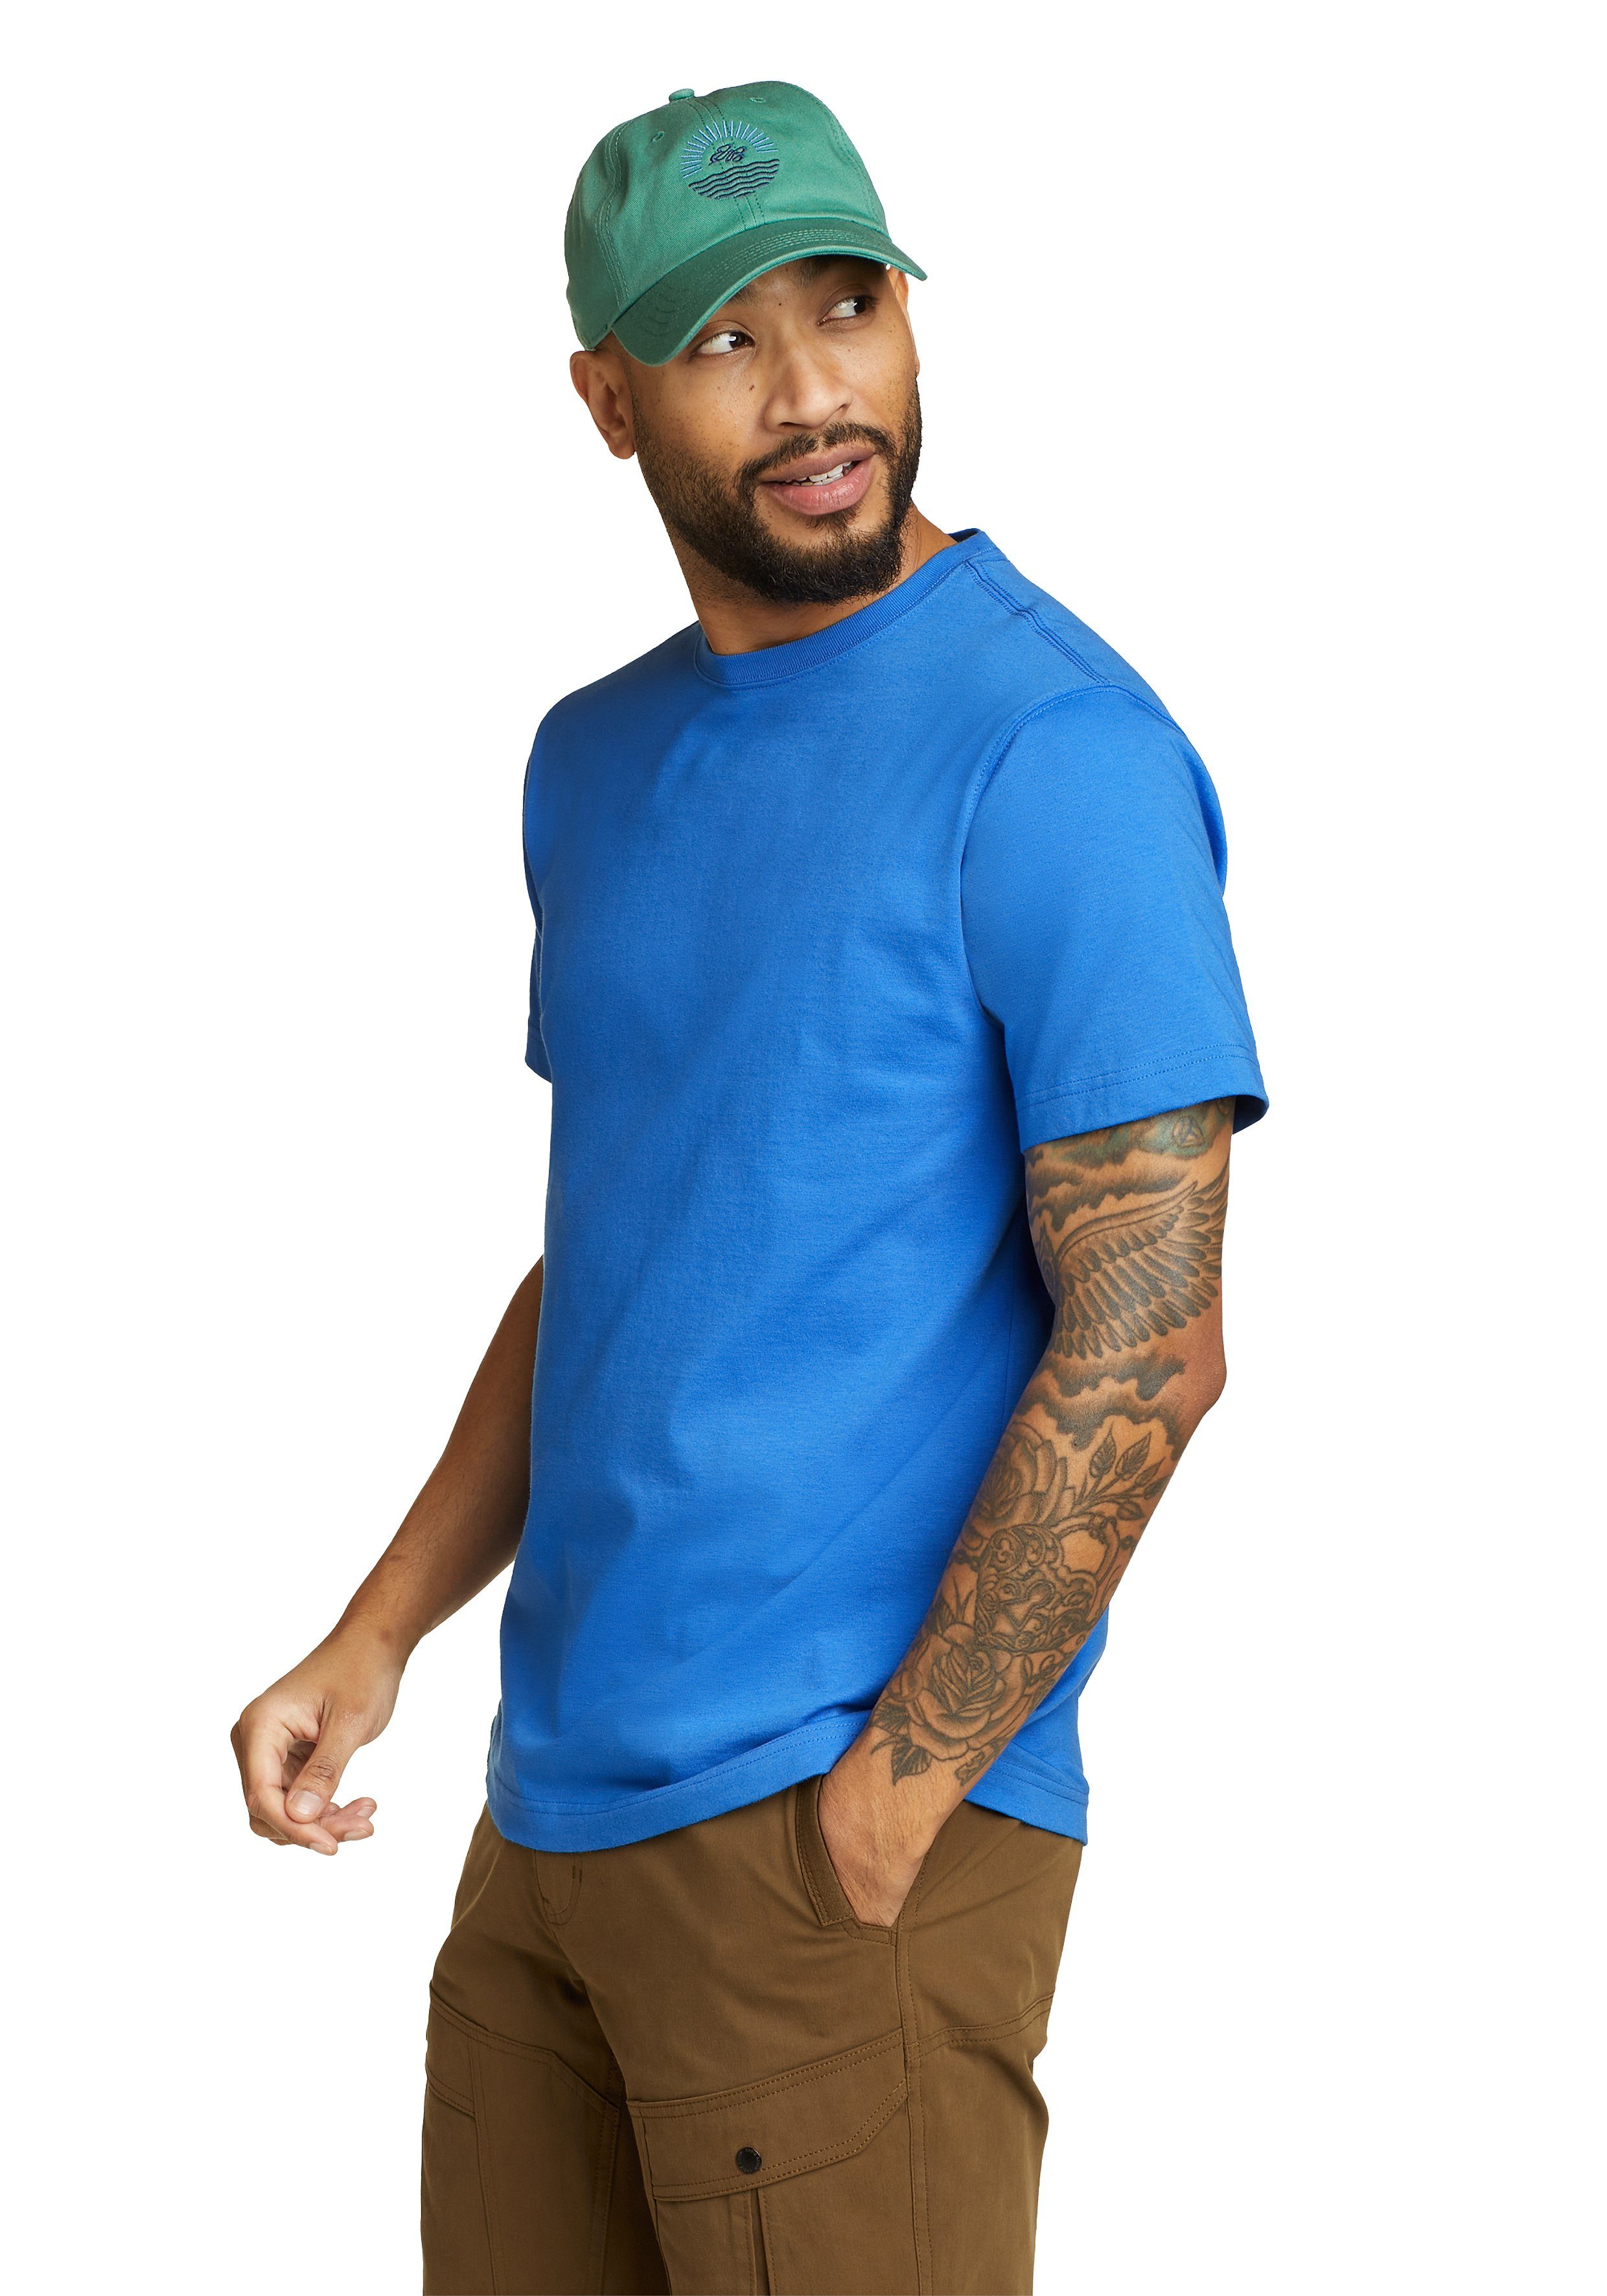 Eddie Bauer T-Shirt Legend Blau Brilliantes Shirt Kurzarm Baumwolle Pro 100% - Wash